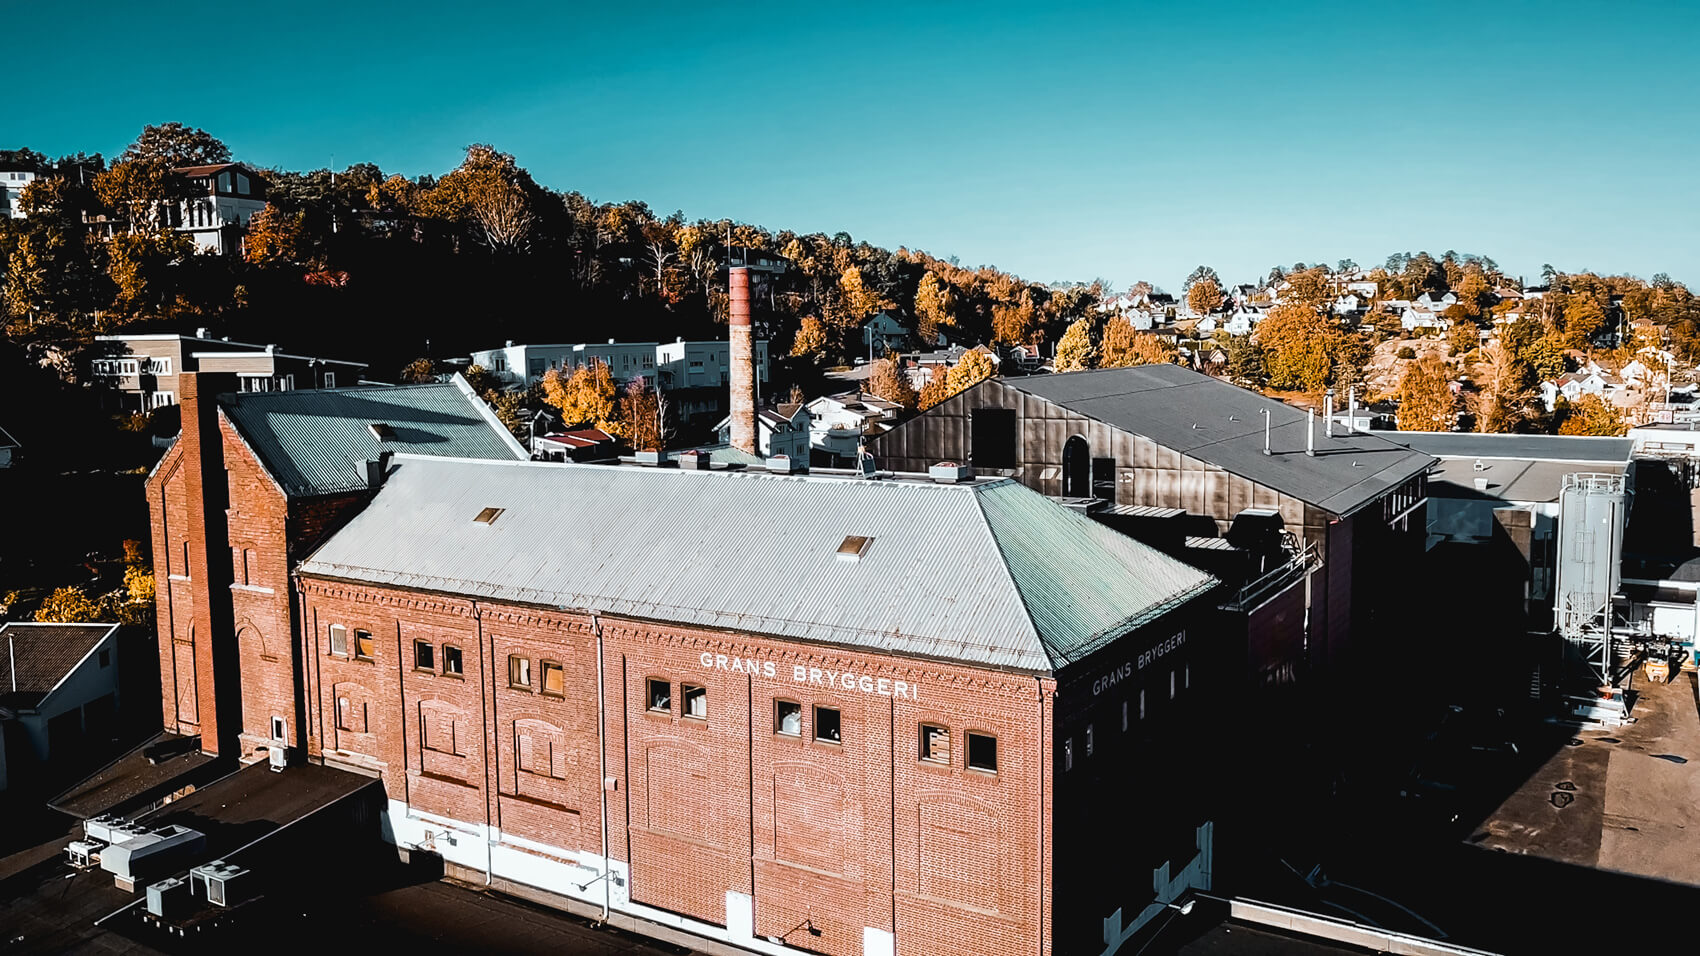 Grans Bryggeri AS, Norwegen: Kompletter Heißblock plus kontinuierliche Automatisierung